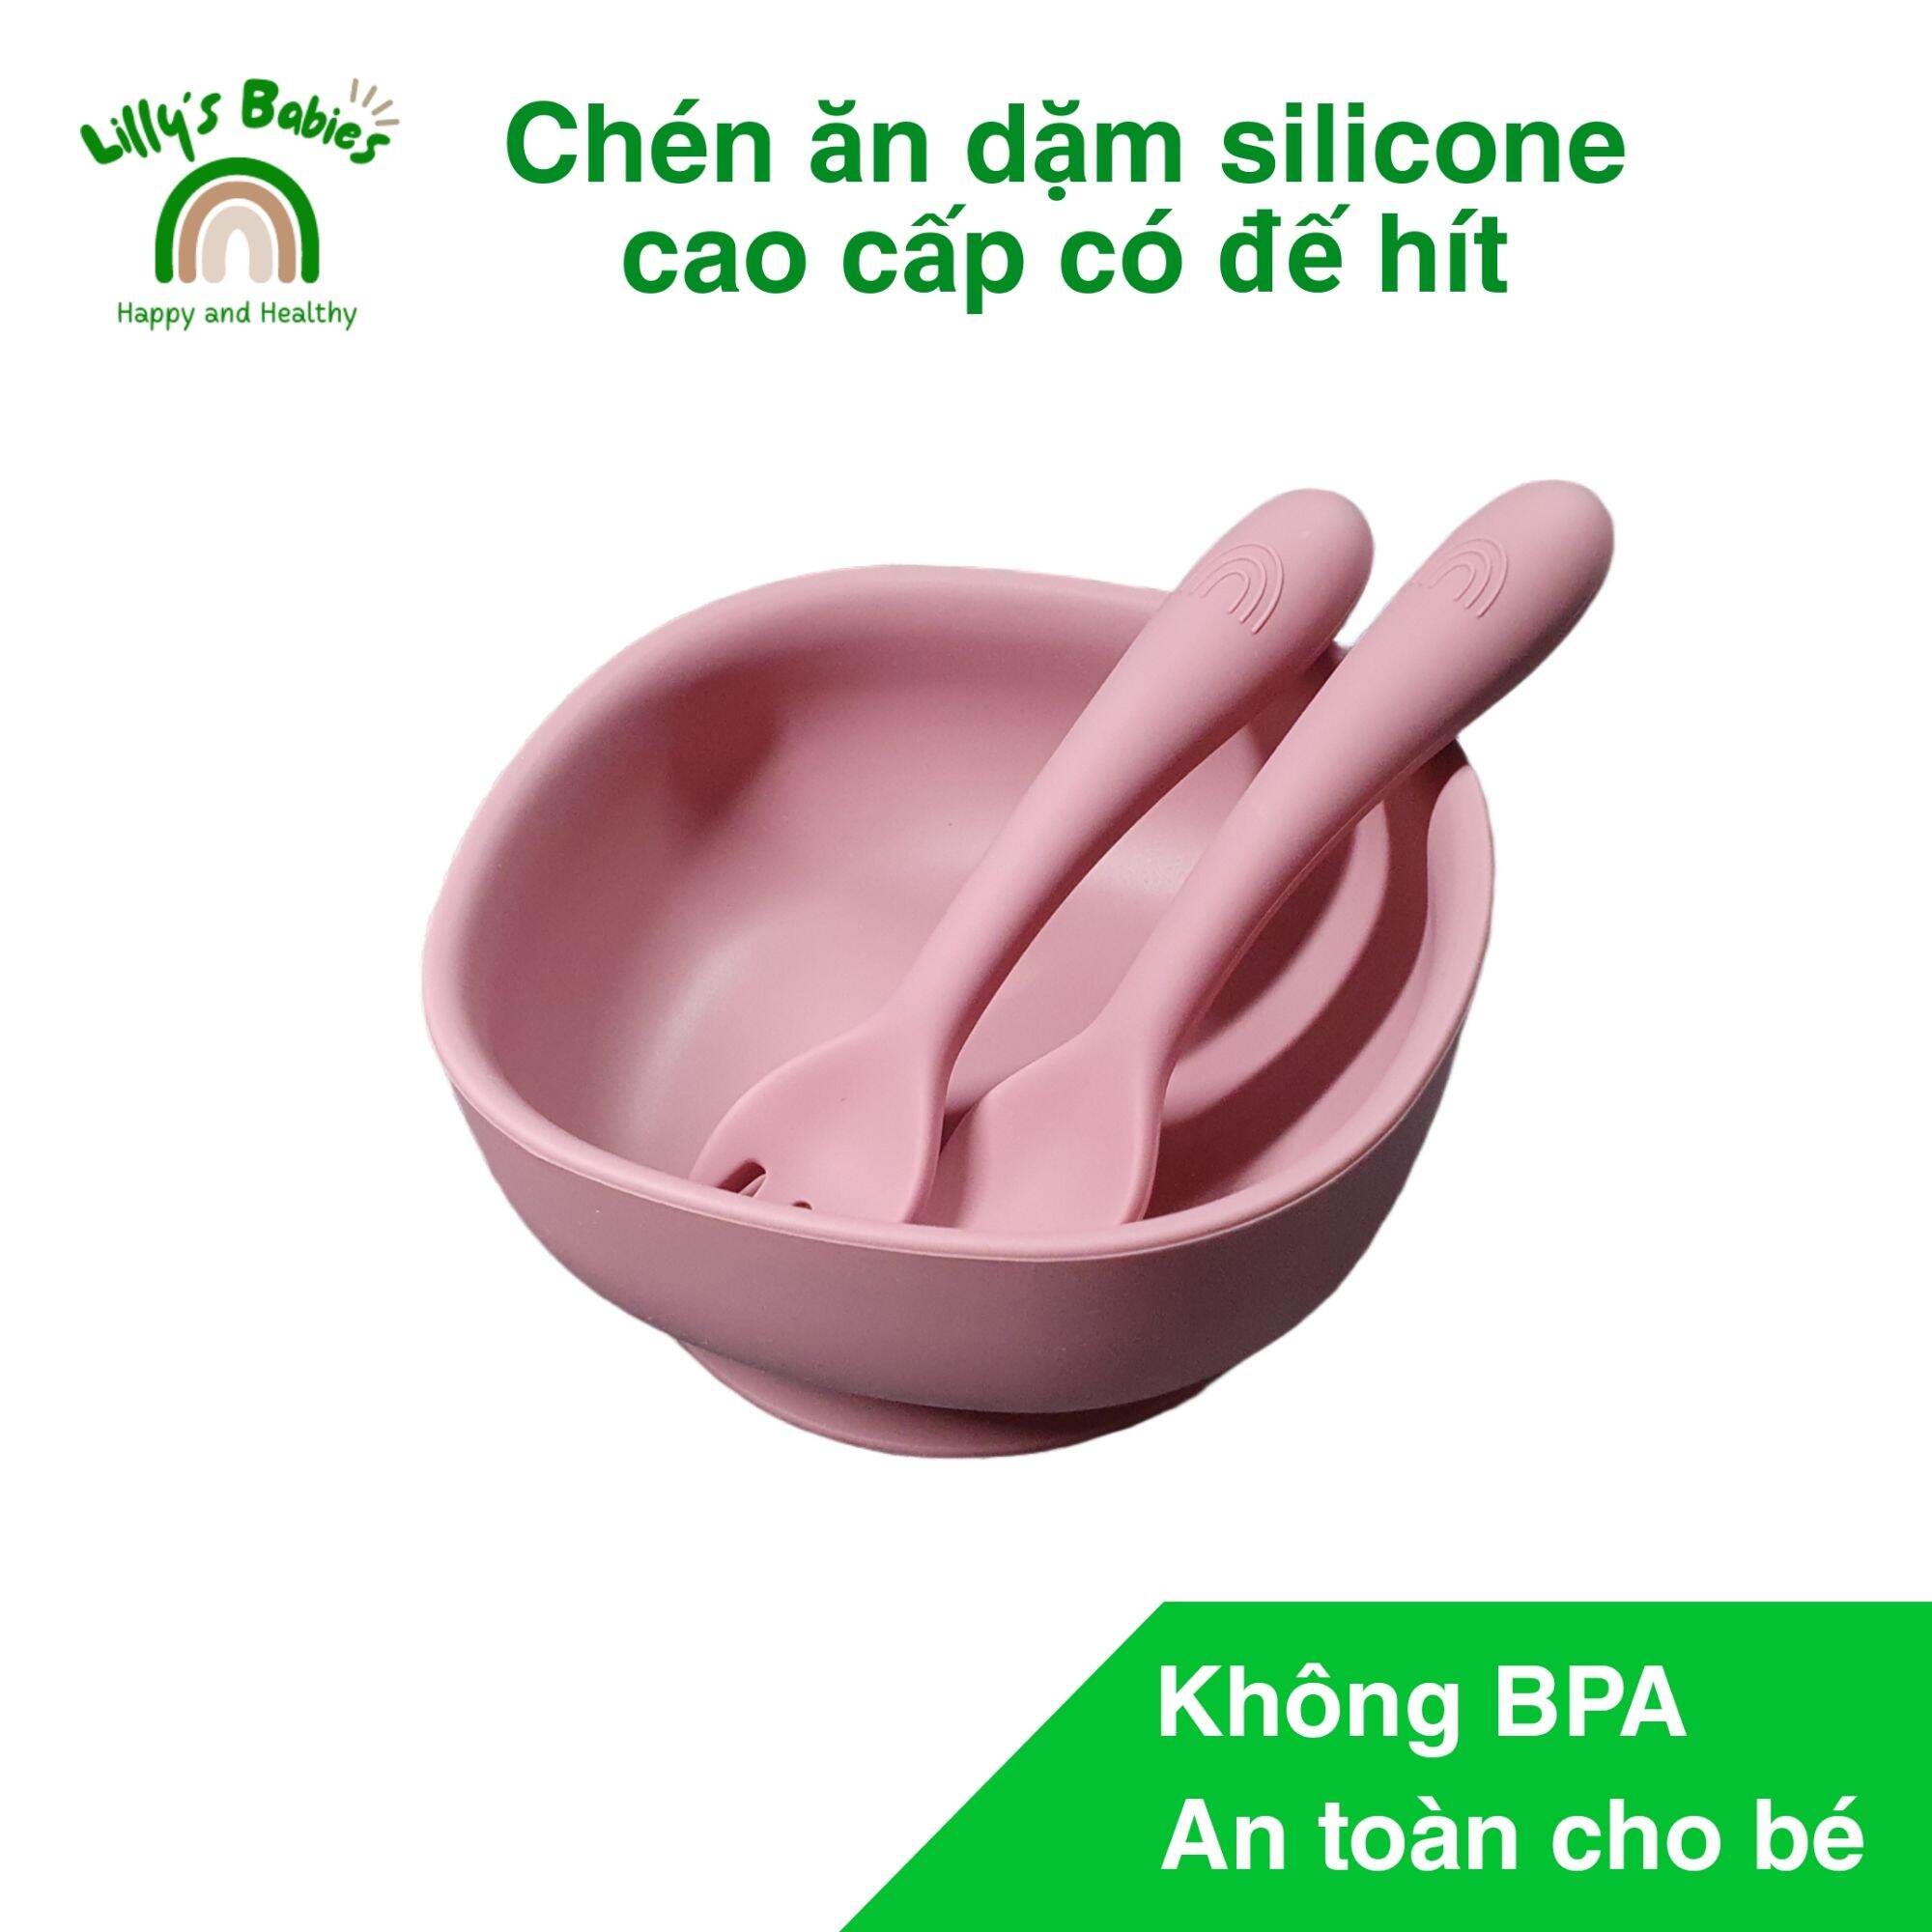 Chén ăn dặm silicone cao cấp có đế hít, màu hồng, không BPA và chất độc hại